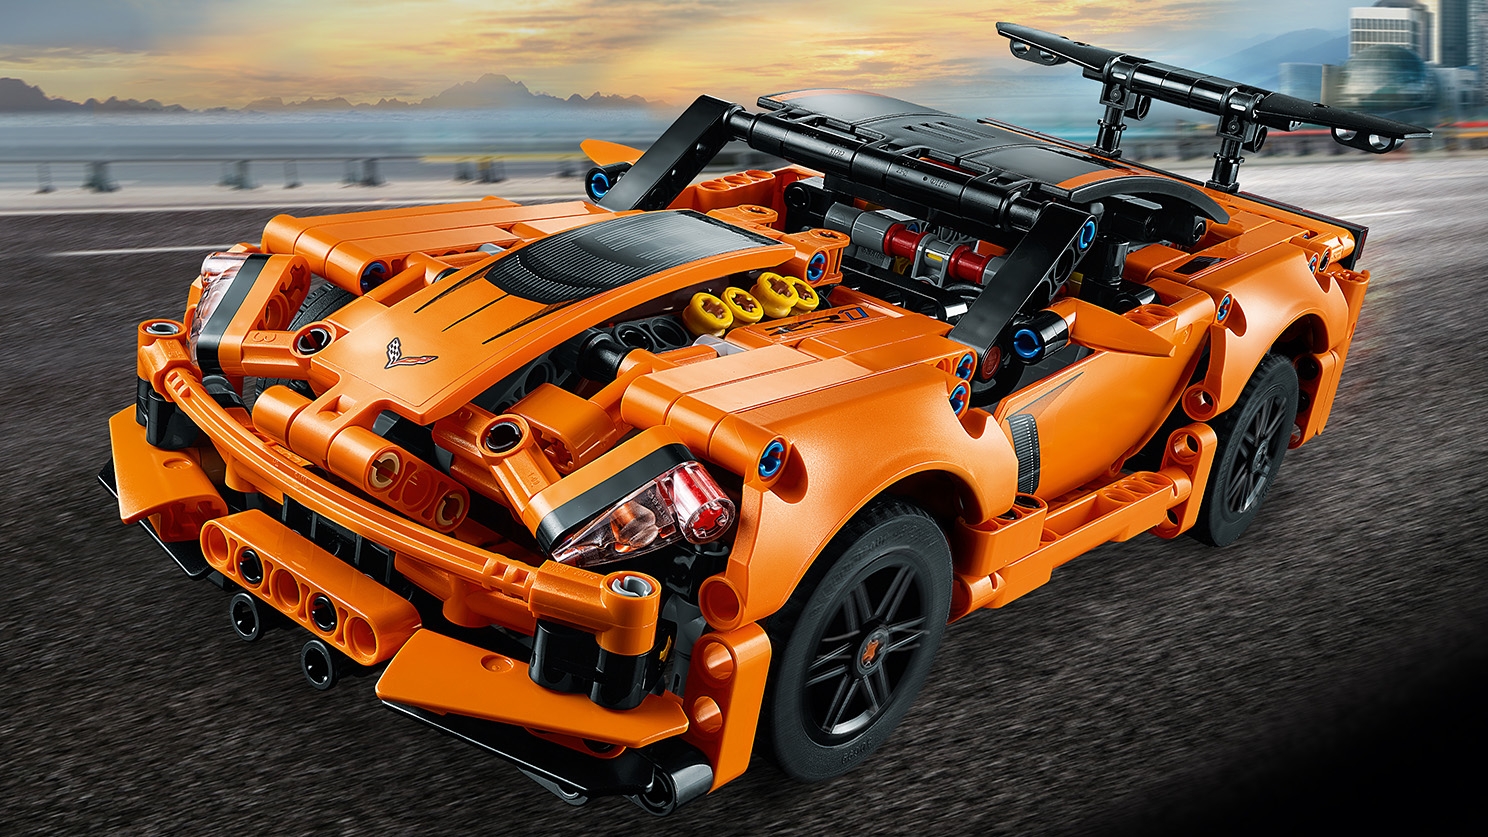 Technic Lego 42093 Chevrolet Corvette ZR1 oder Hot Rod 2 in 1 Modell NEU/OVP 